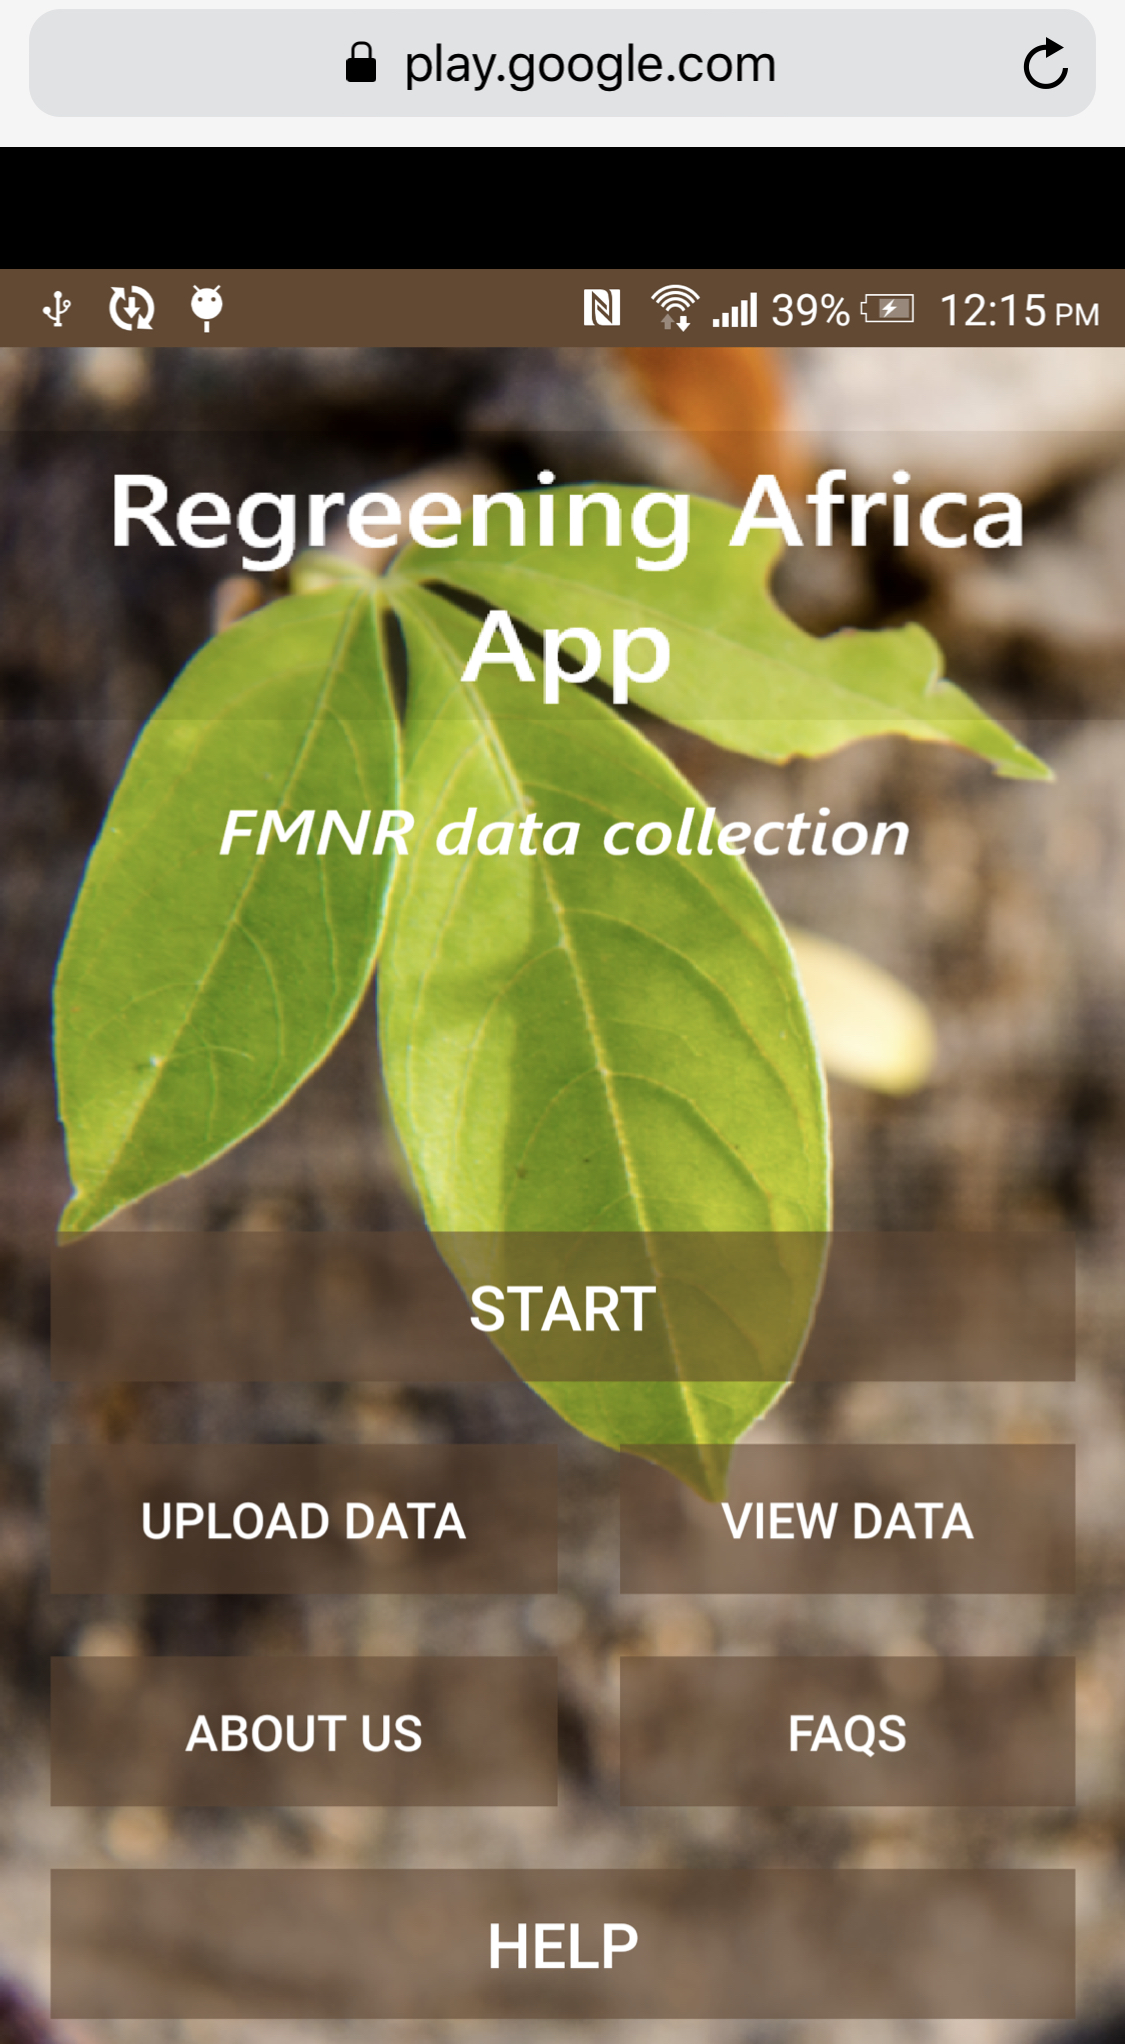 Beta version of Regreening Africa App